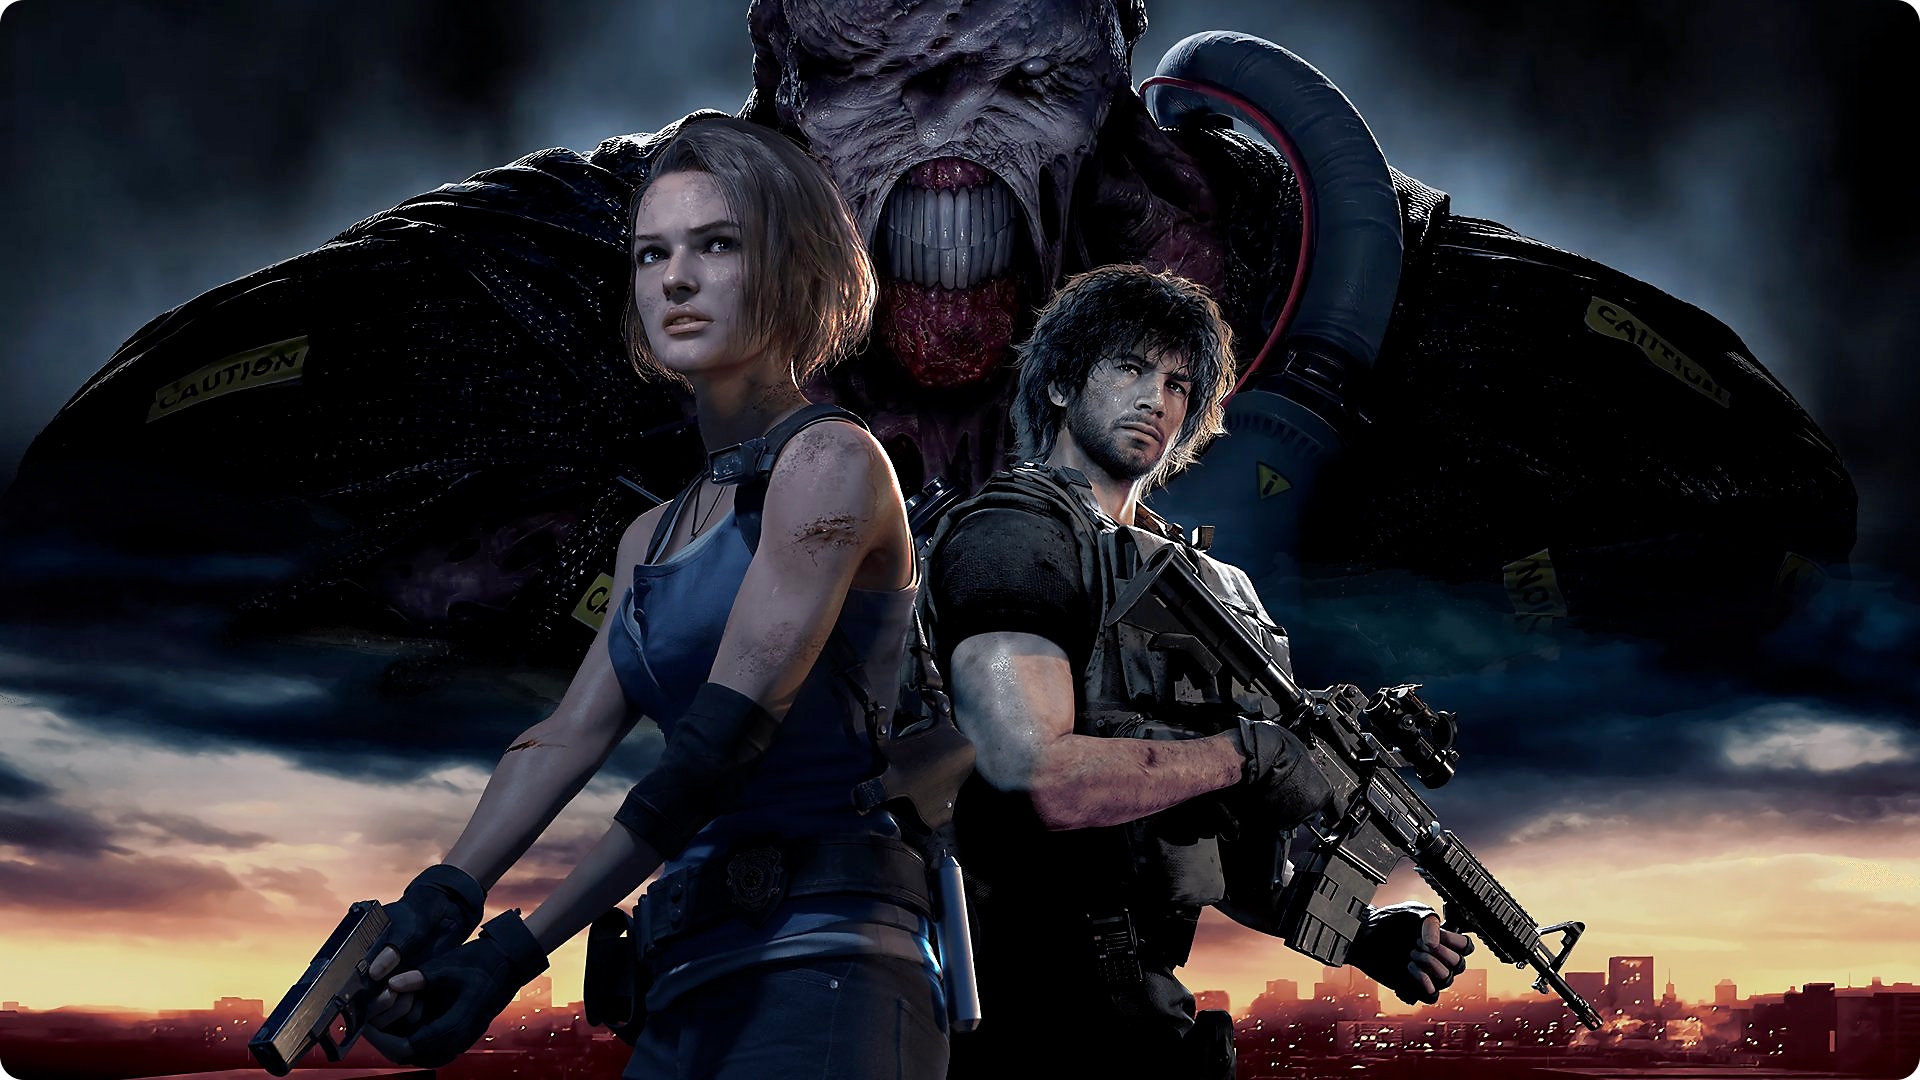 الصورة الفنية الأساسية للعبة Resident Evil 3 تظهر فيها الشخصيات الرئيسية Jill و Carlos في المقدمة والخصم الرئيسي Nemesis في الخلفية. 